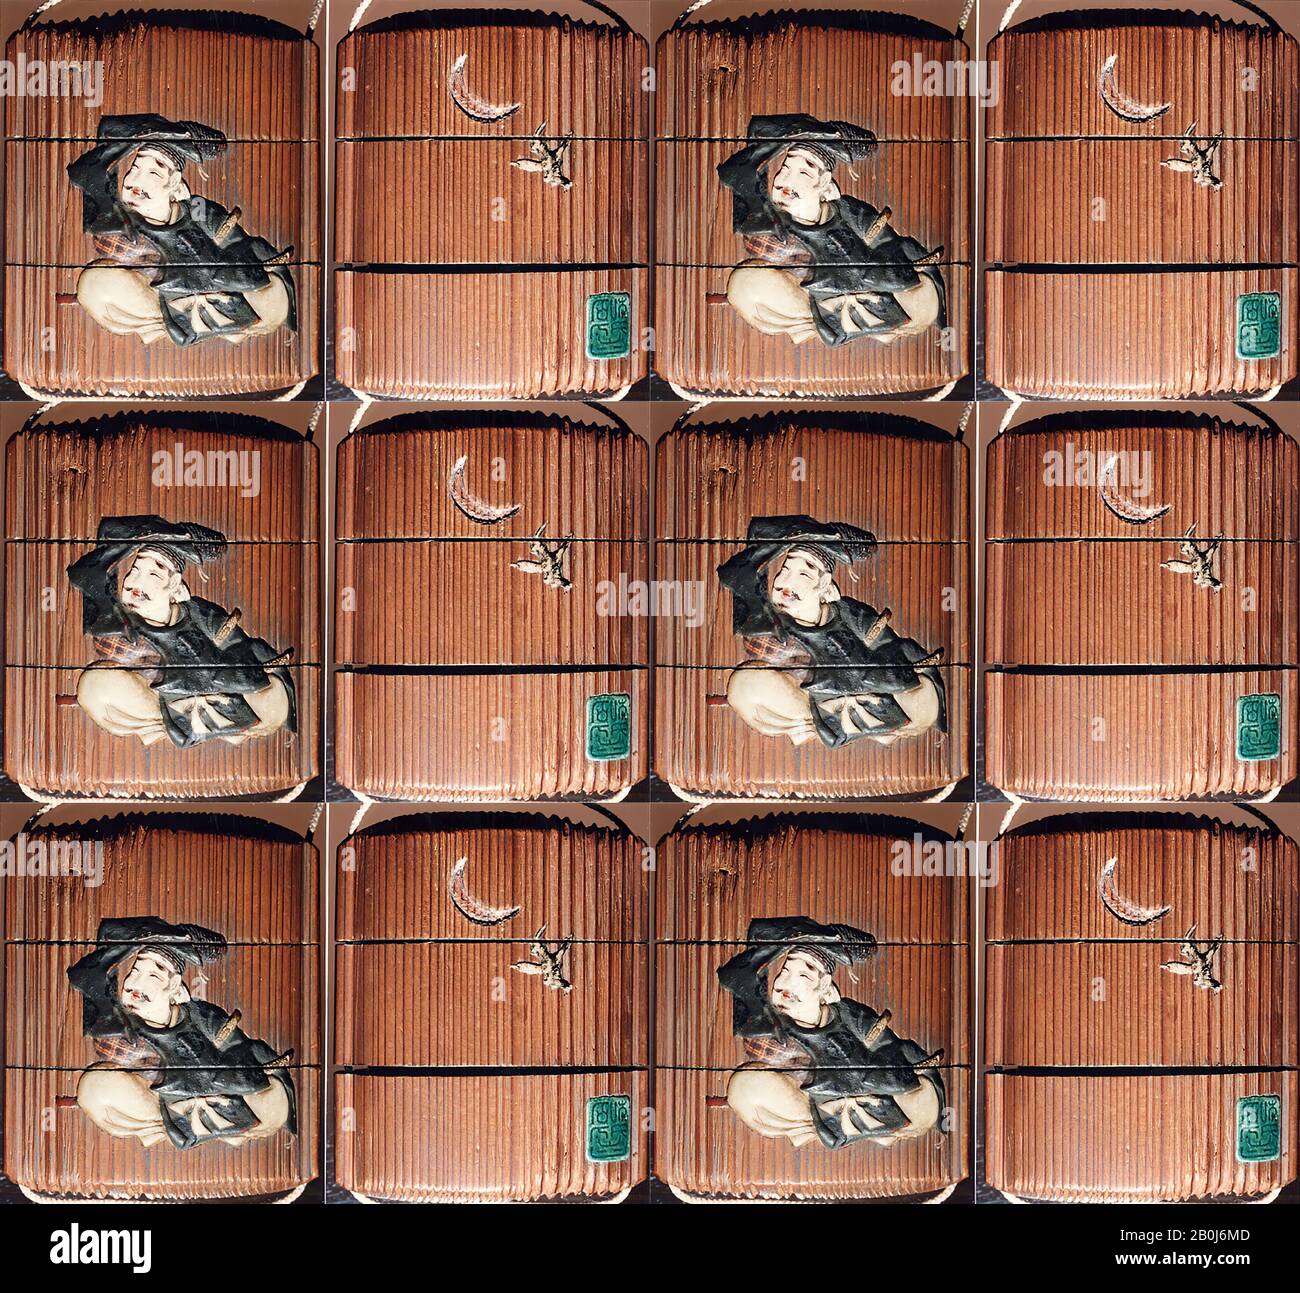 Gehäuse (Inrō) mit Design von Samurai Auf Dem Boden Sitzend (obverse); Vogel vor einem Halbmond fliegen (rückwärts), Japan, 19. Jahrhundert, Japan, Lack, Holz, geflechtetes Elfenbein, Raden, Keramik, verschiedene Einlagen; innen: Einfach, H. 2 13 / 16 Zoll (7,1 cm); W. 2 5/16 Zoll (5,9 cm); D. 15/16 Zoll (2,4 cm), Inrō Stockfoto